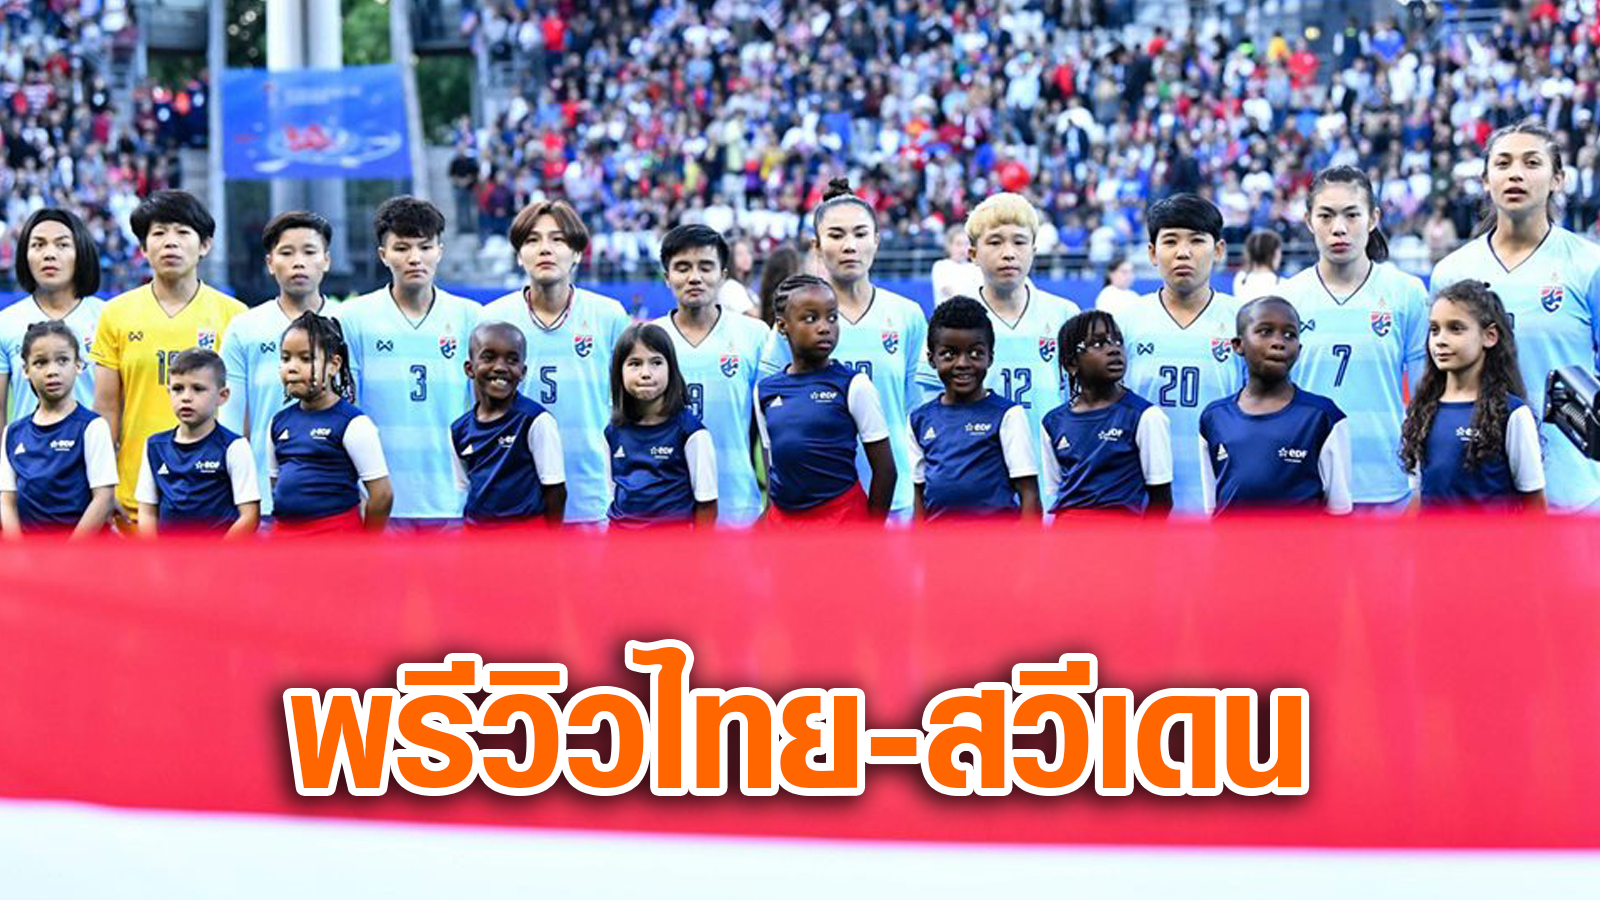 ทีมชาติสวีเดน ฟุตบอลหญิงทีมชาติไทย ฟุตบอลโลกหญิง 2019